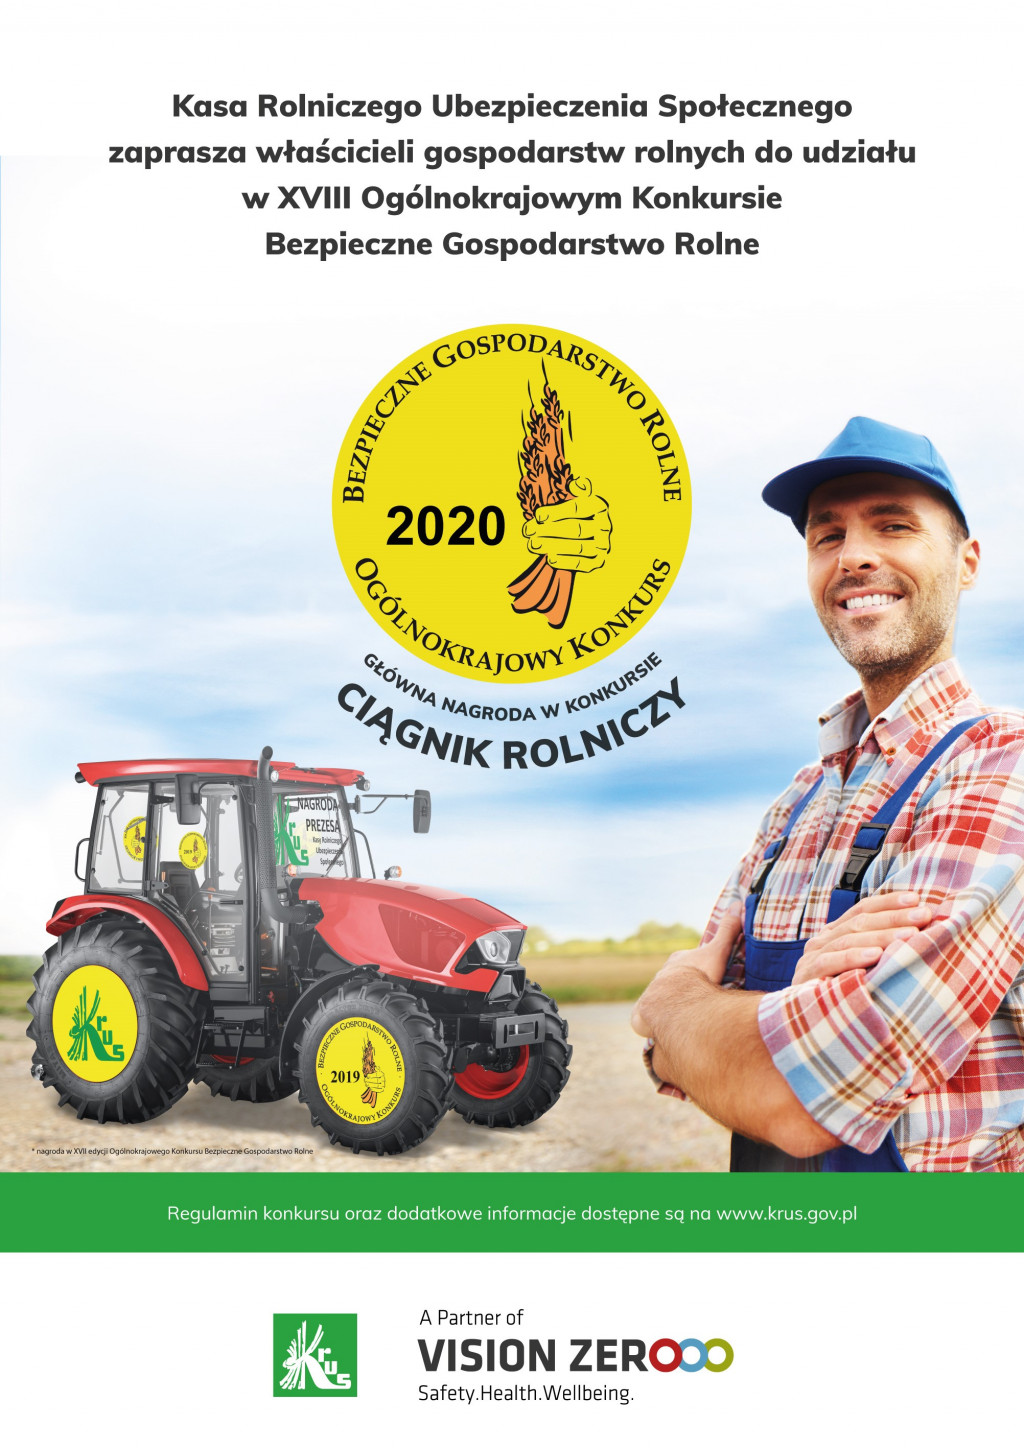 XVIII Ogólnokrajowym Konkursie „Bezpieczne Gospodarstwo Rolne 2020”